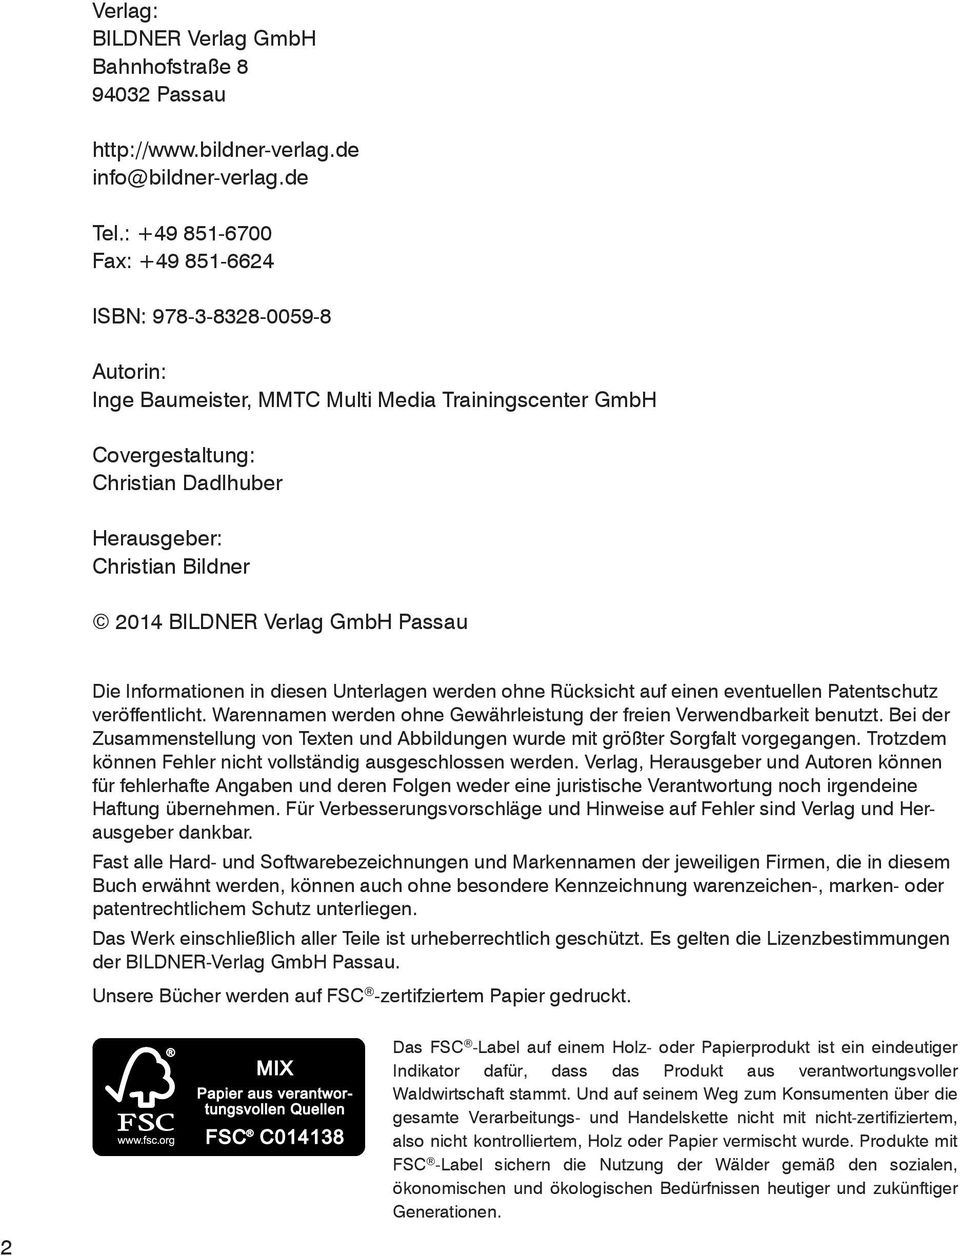 BILDNER Verlag GmbH Passau Die Informationen in diesen Unterlagen werden ohne Rücksicht auf einen eventuellen Patentschutz veröffentlicht.